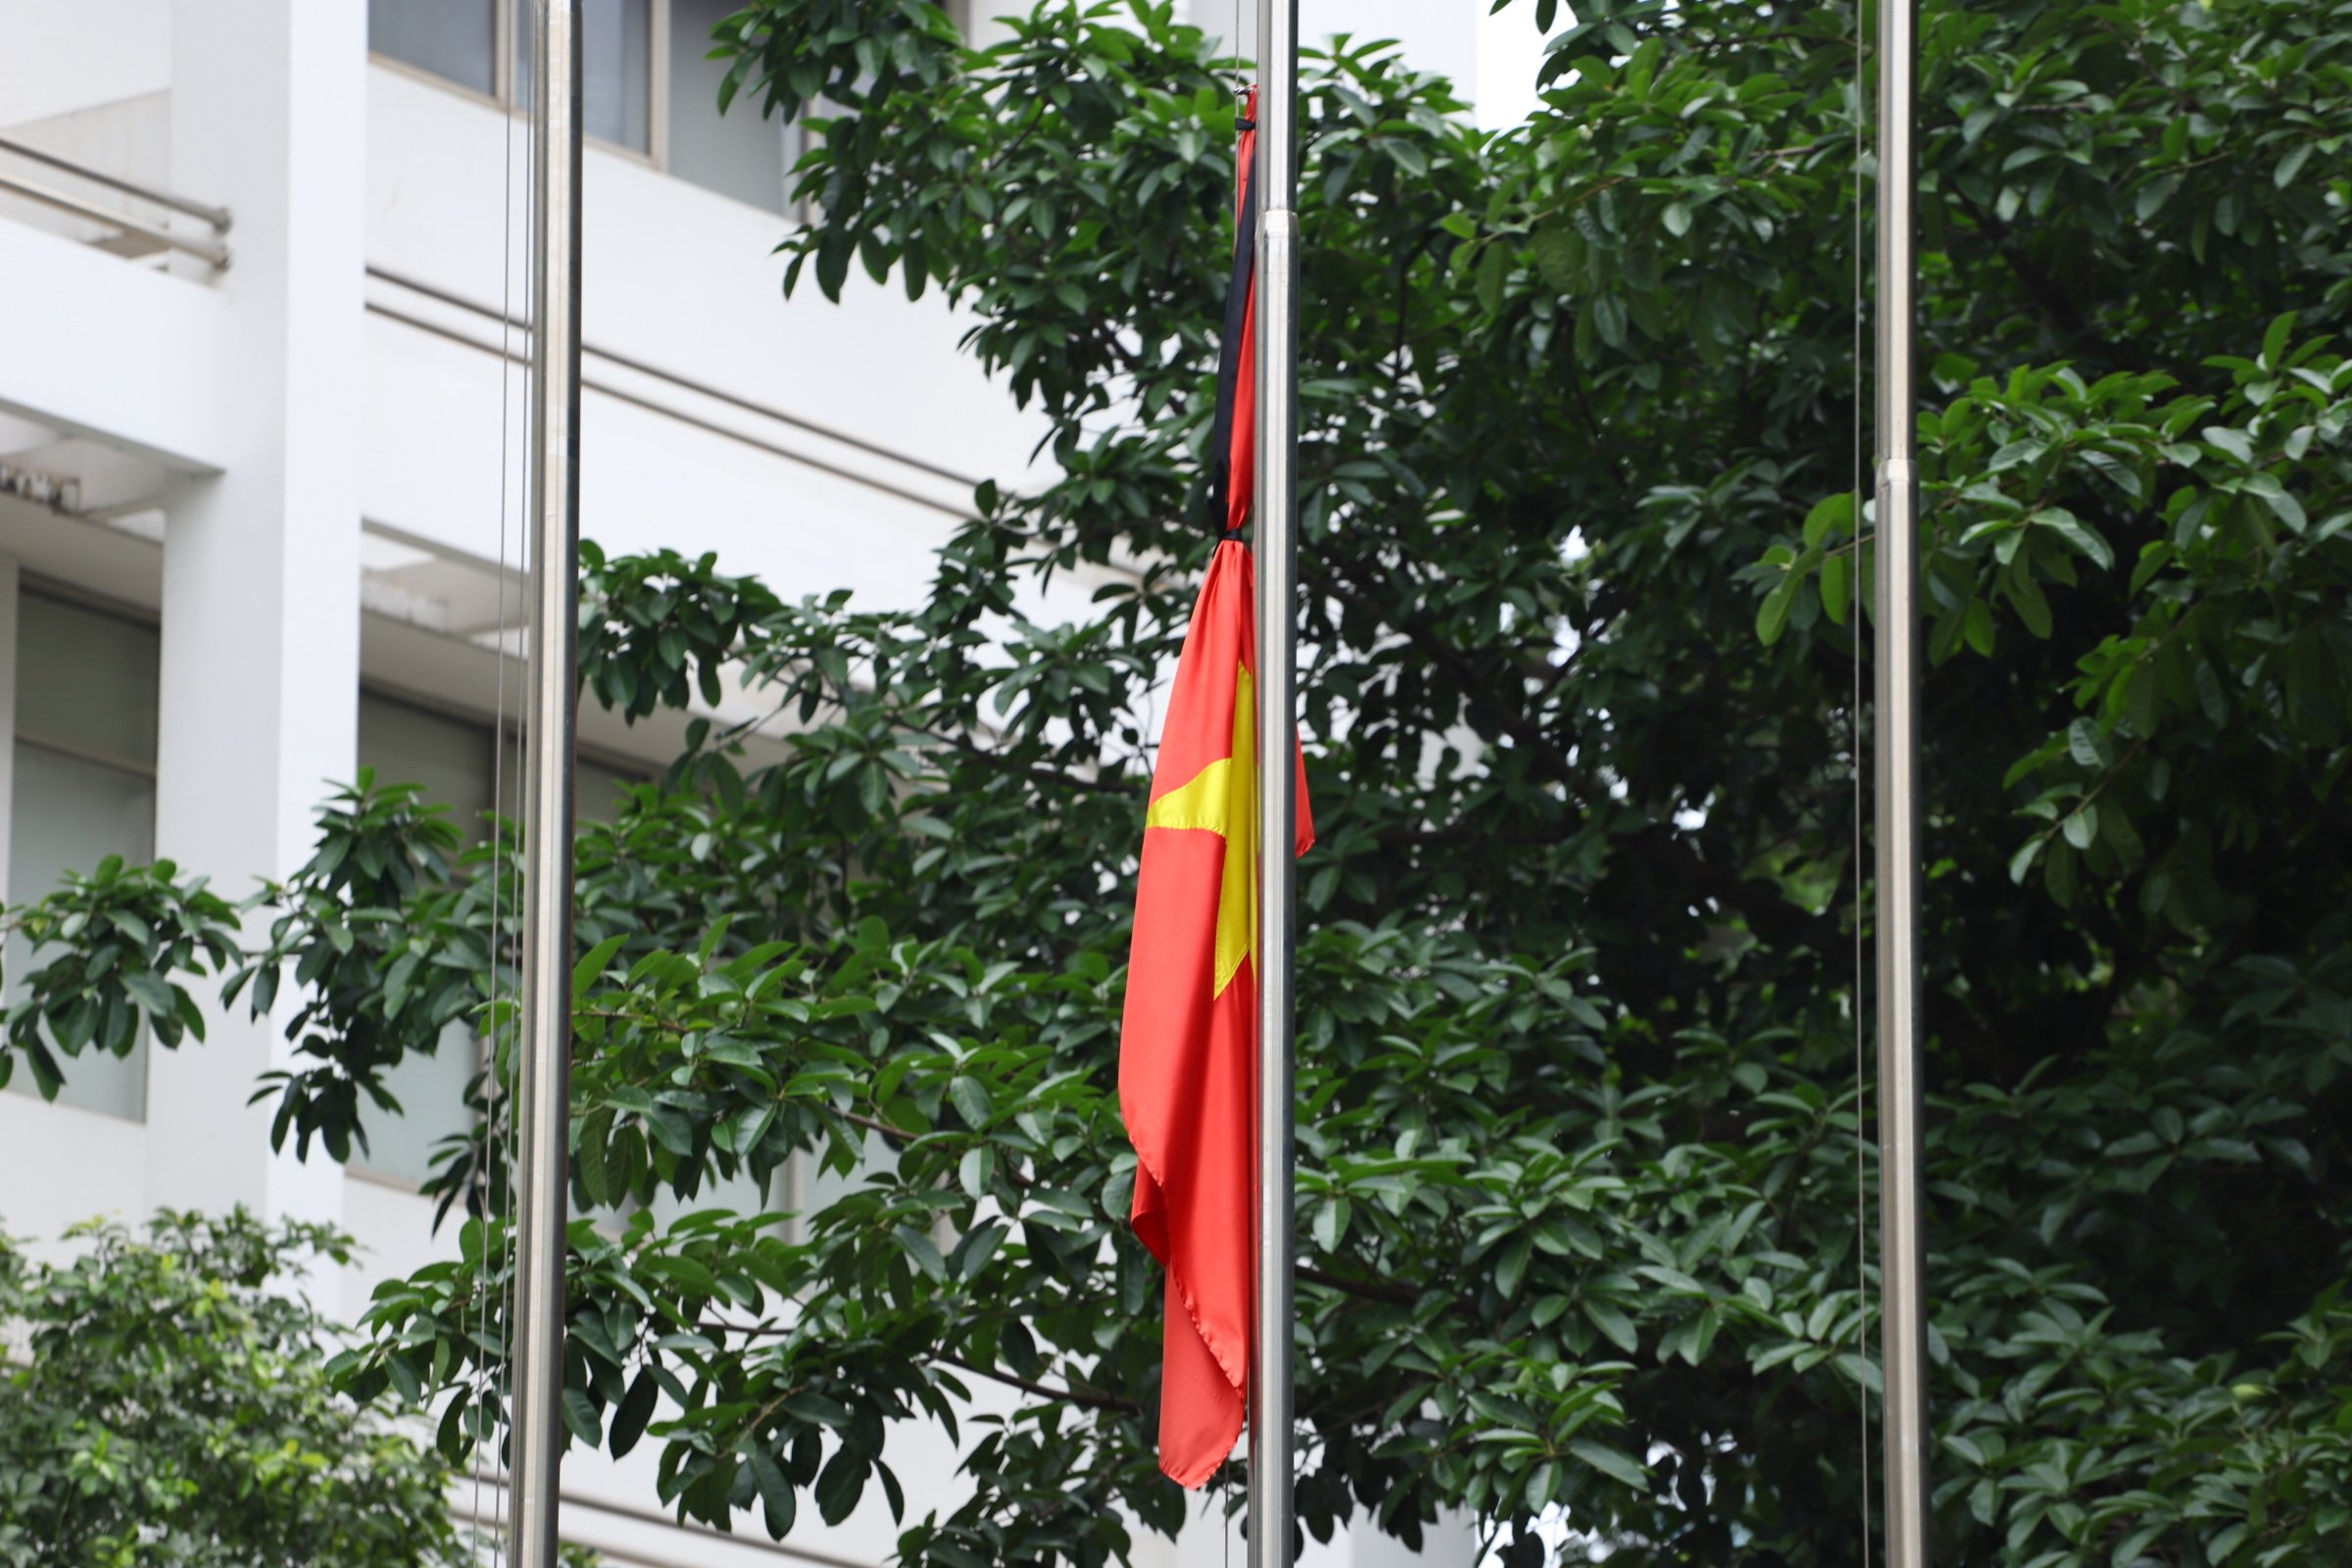 Hướng dẫn gửi lời chia buồn về Quốc tang Tổng Bí thư Nguyễn Phú Trọng qua VNeID 